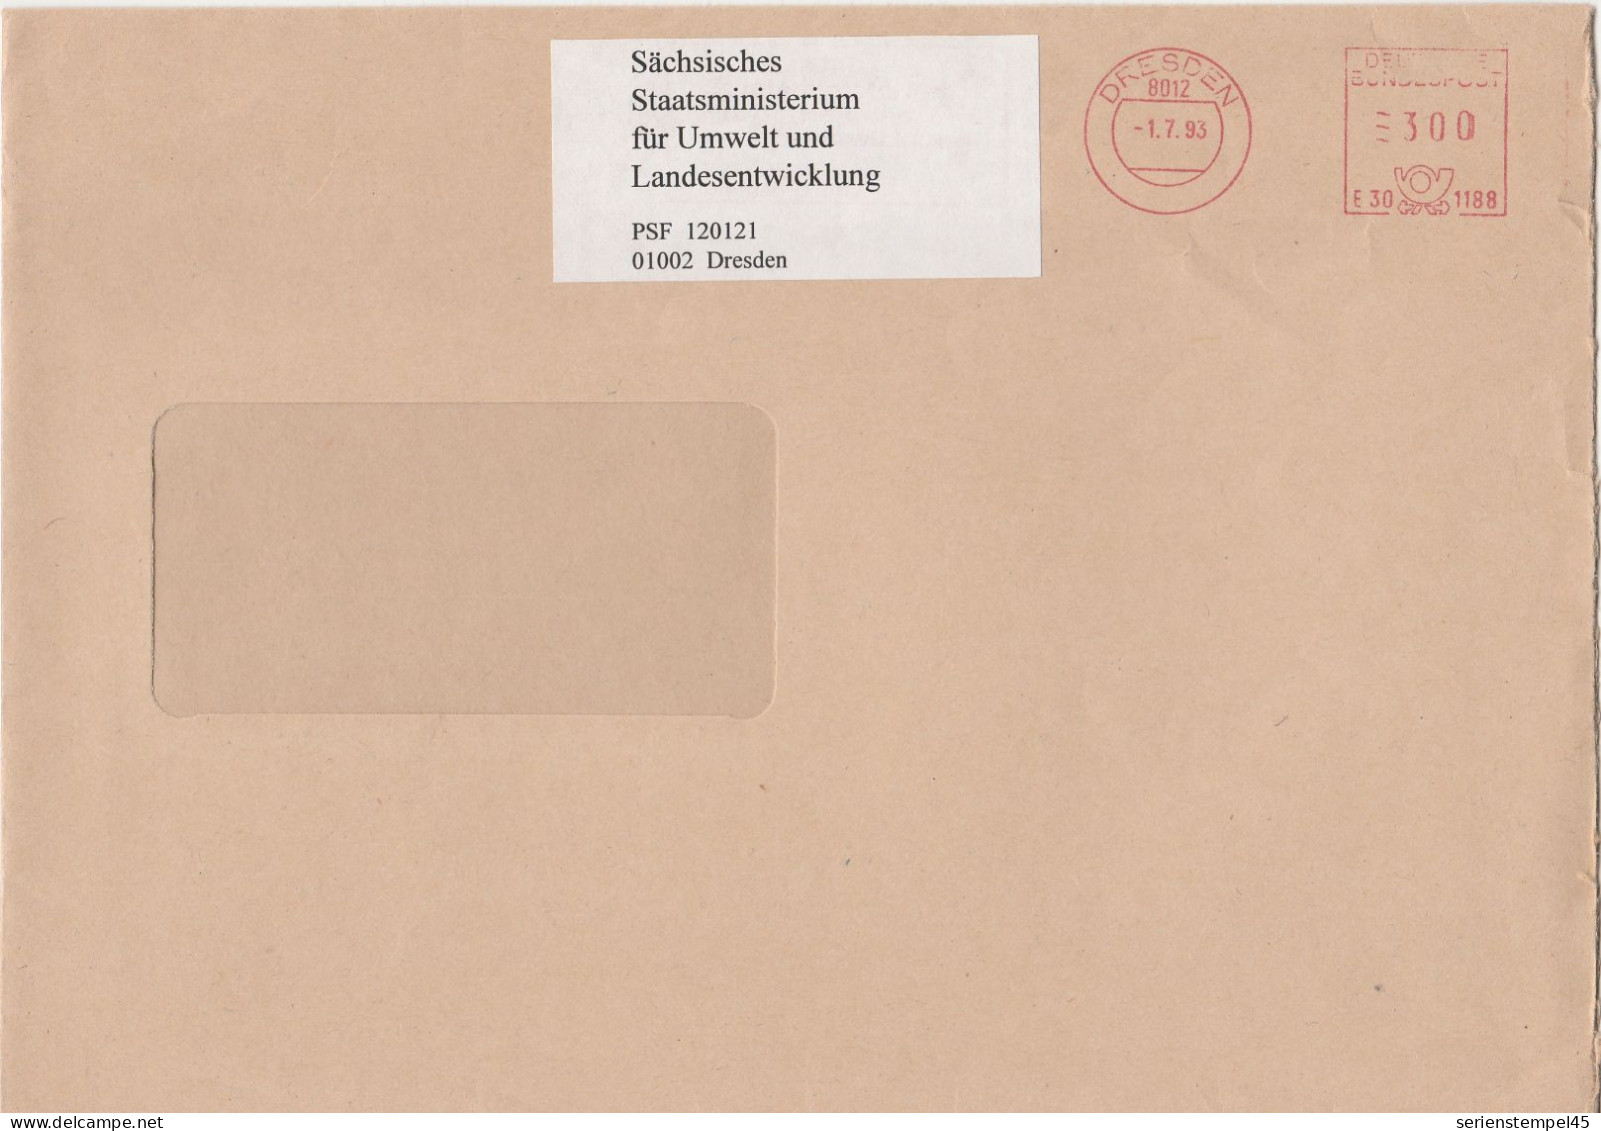 Deutsche Bundespost Brief Mit Freistempel VGO PLZ Oben Dresden 1993 Sächsisches Staatsministerium E30 1188 Mit Überklebe - Máquinas Franqueo (EMA)